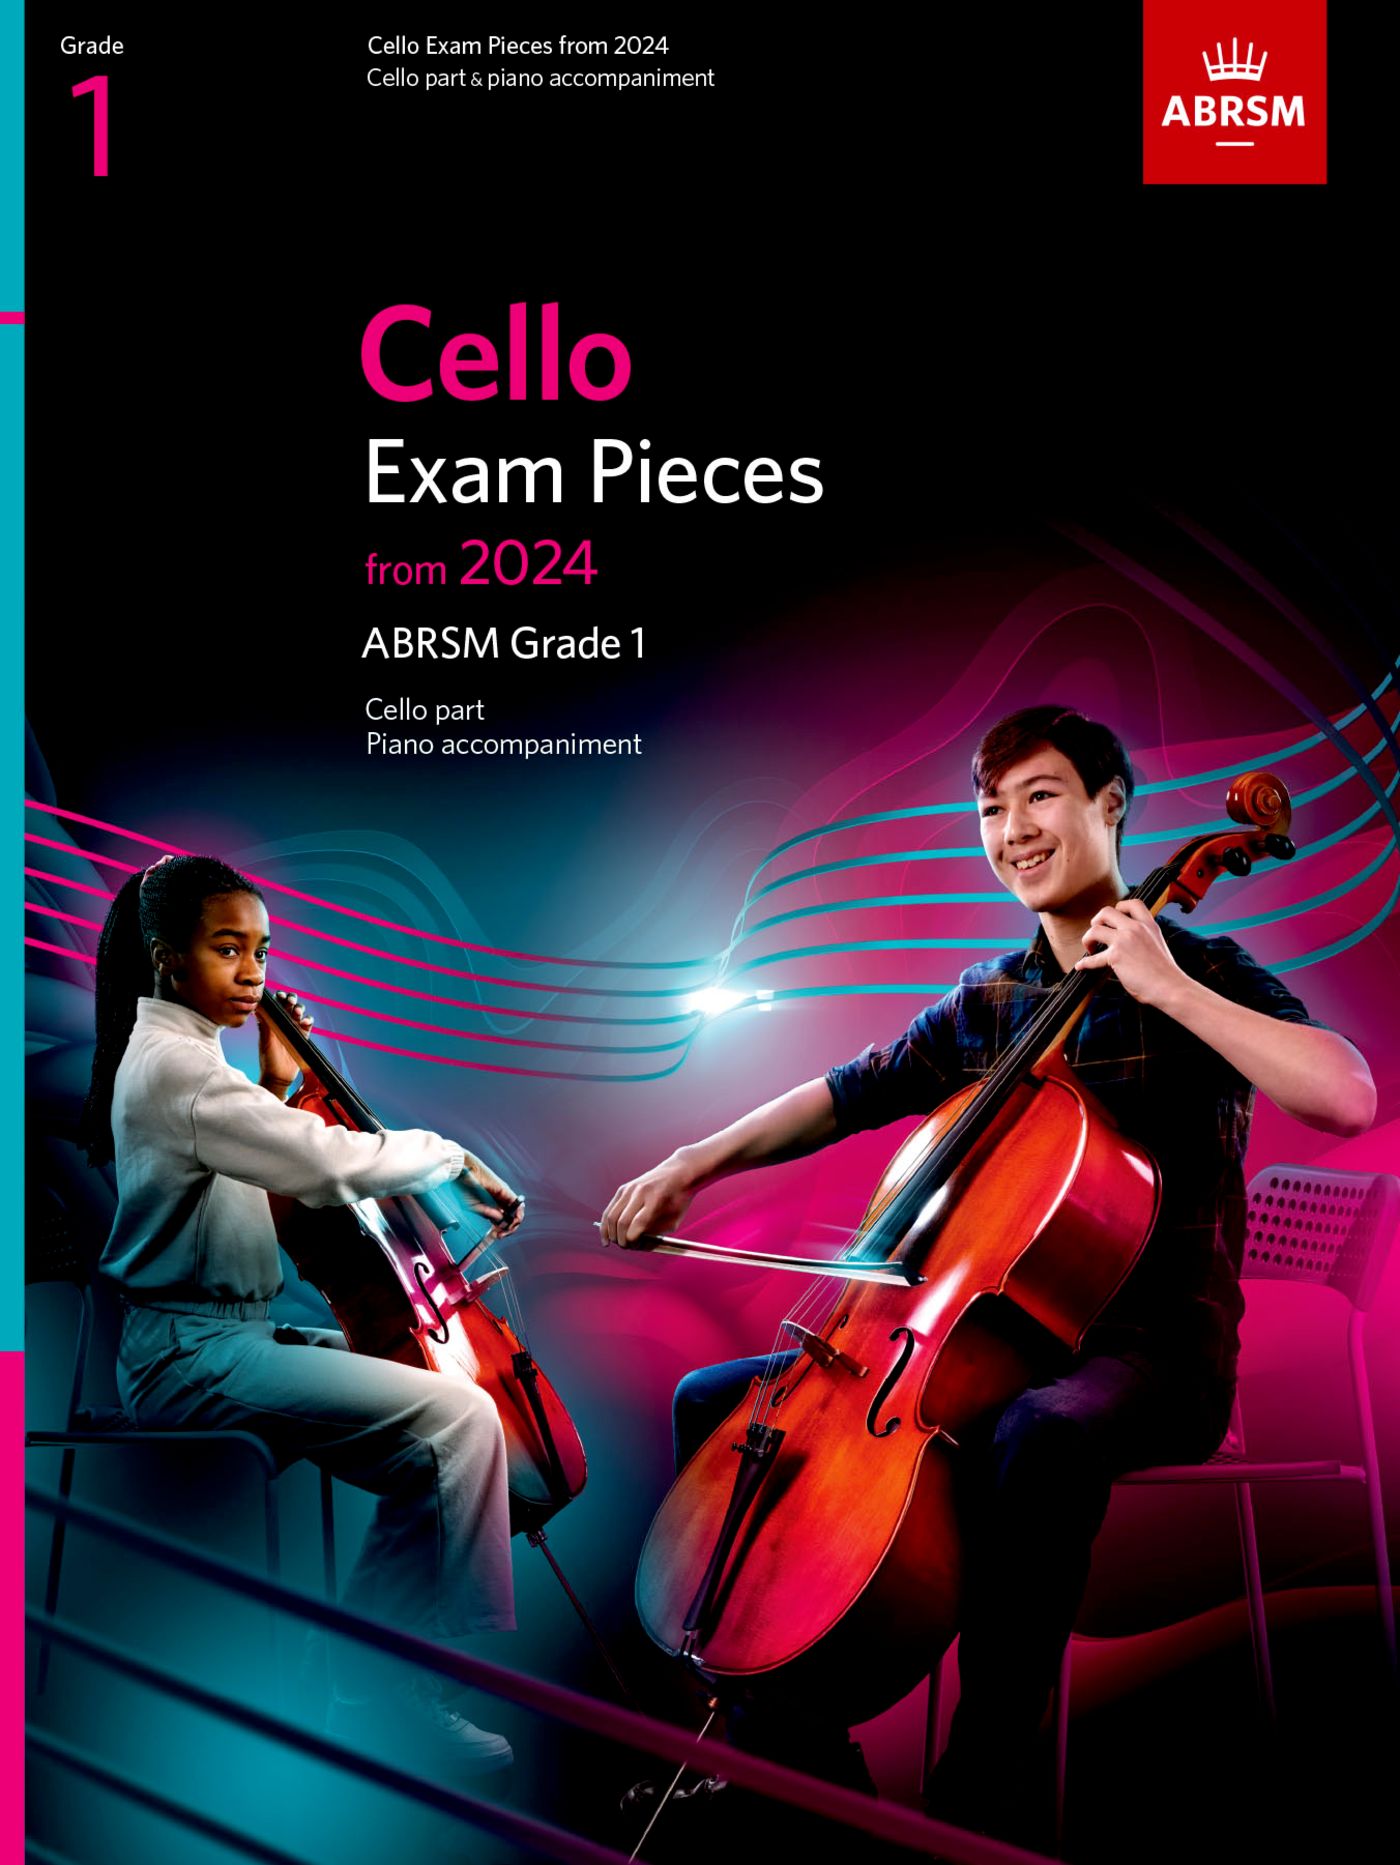 ABRSM Cello Exam Pieces 2024, Grade 1